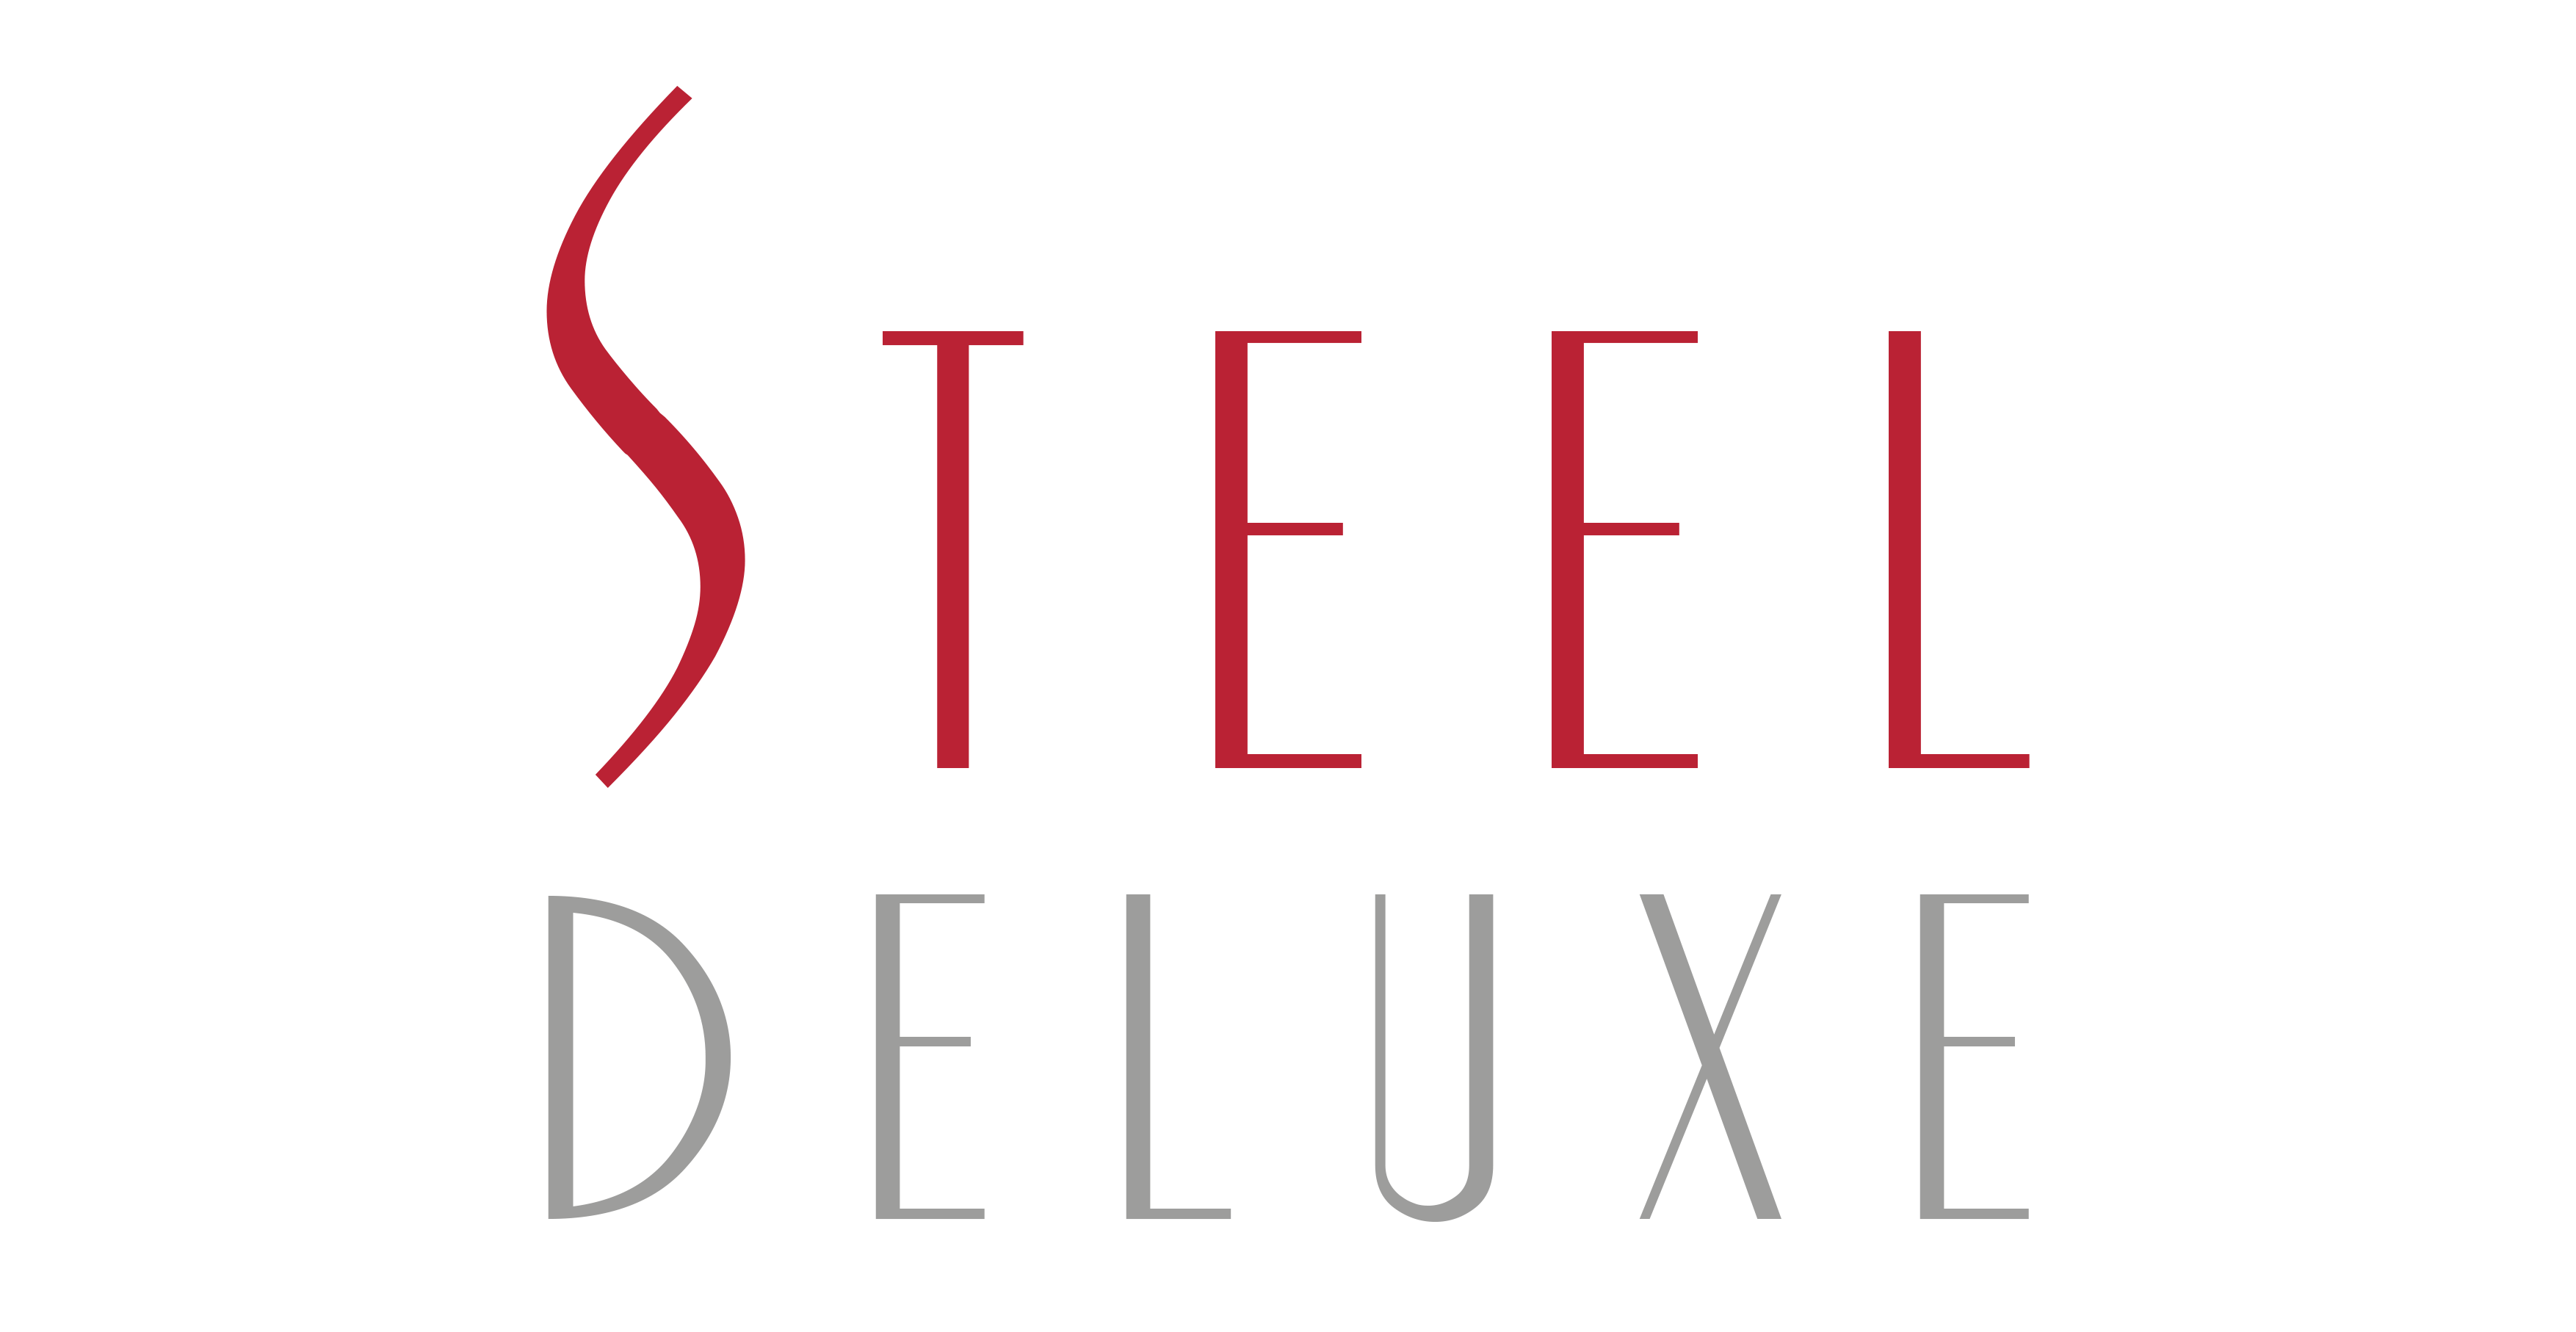 STEEL DELUXE Logo